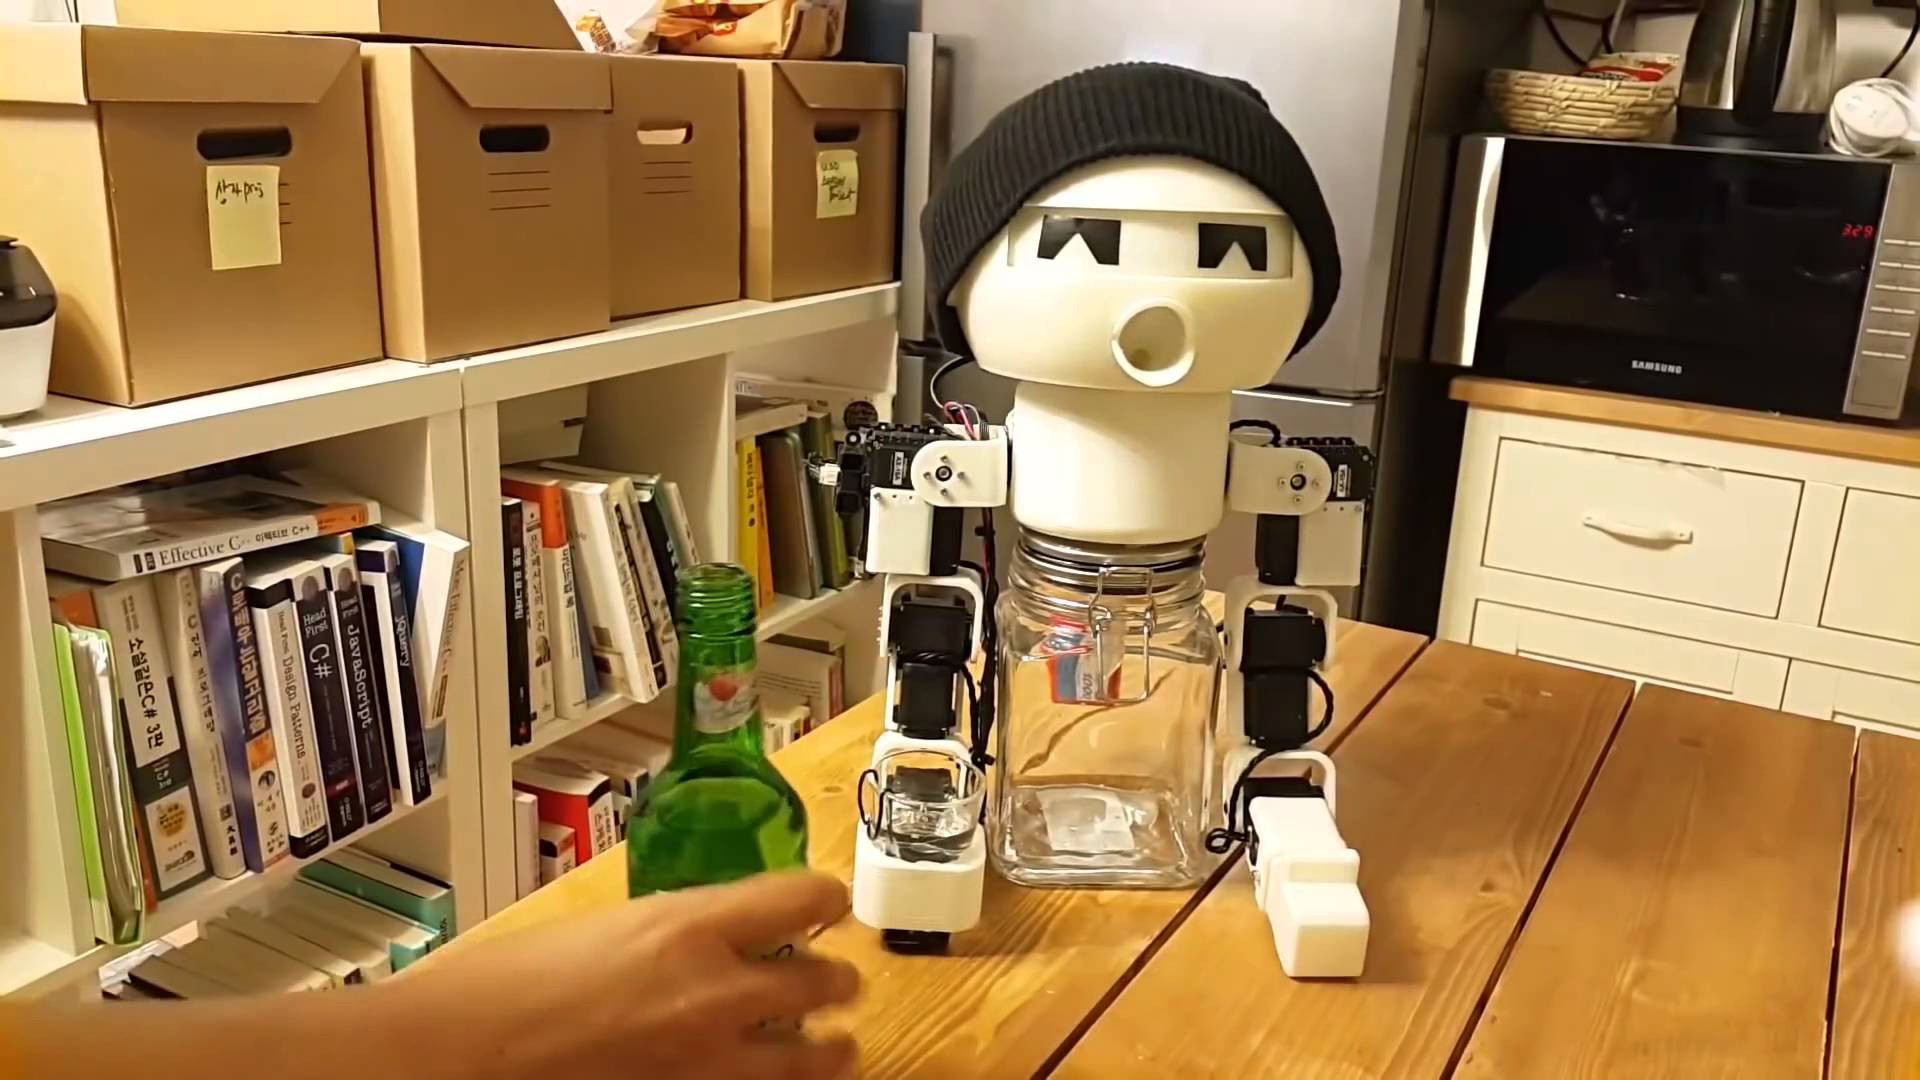 Видео с роботом-собутыльником набрало млн. просмотров в фейсбук